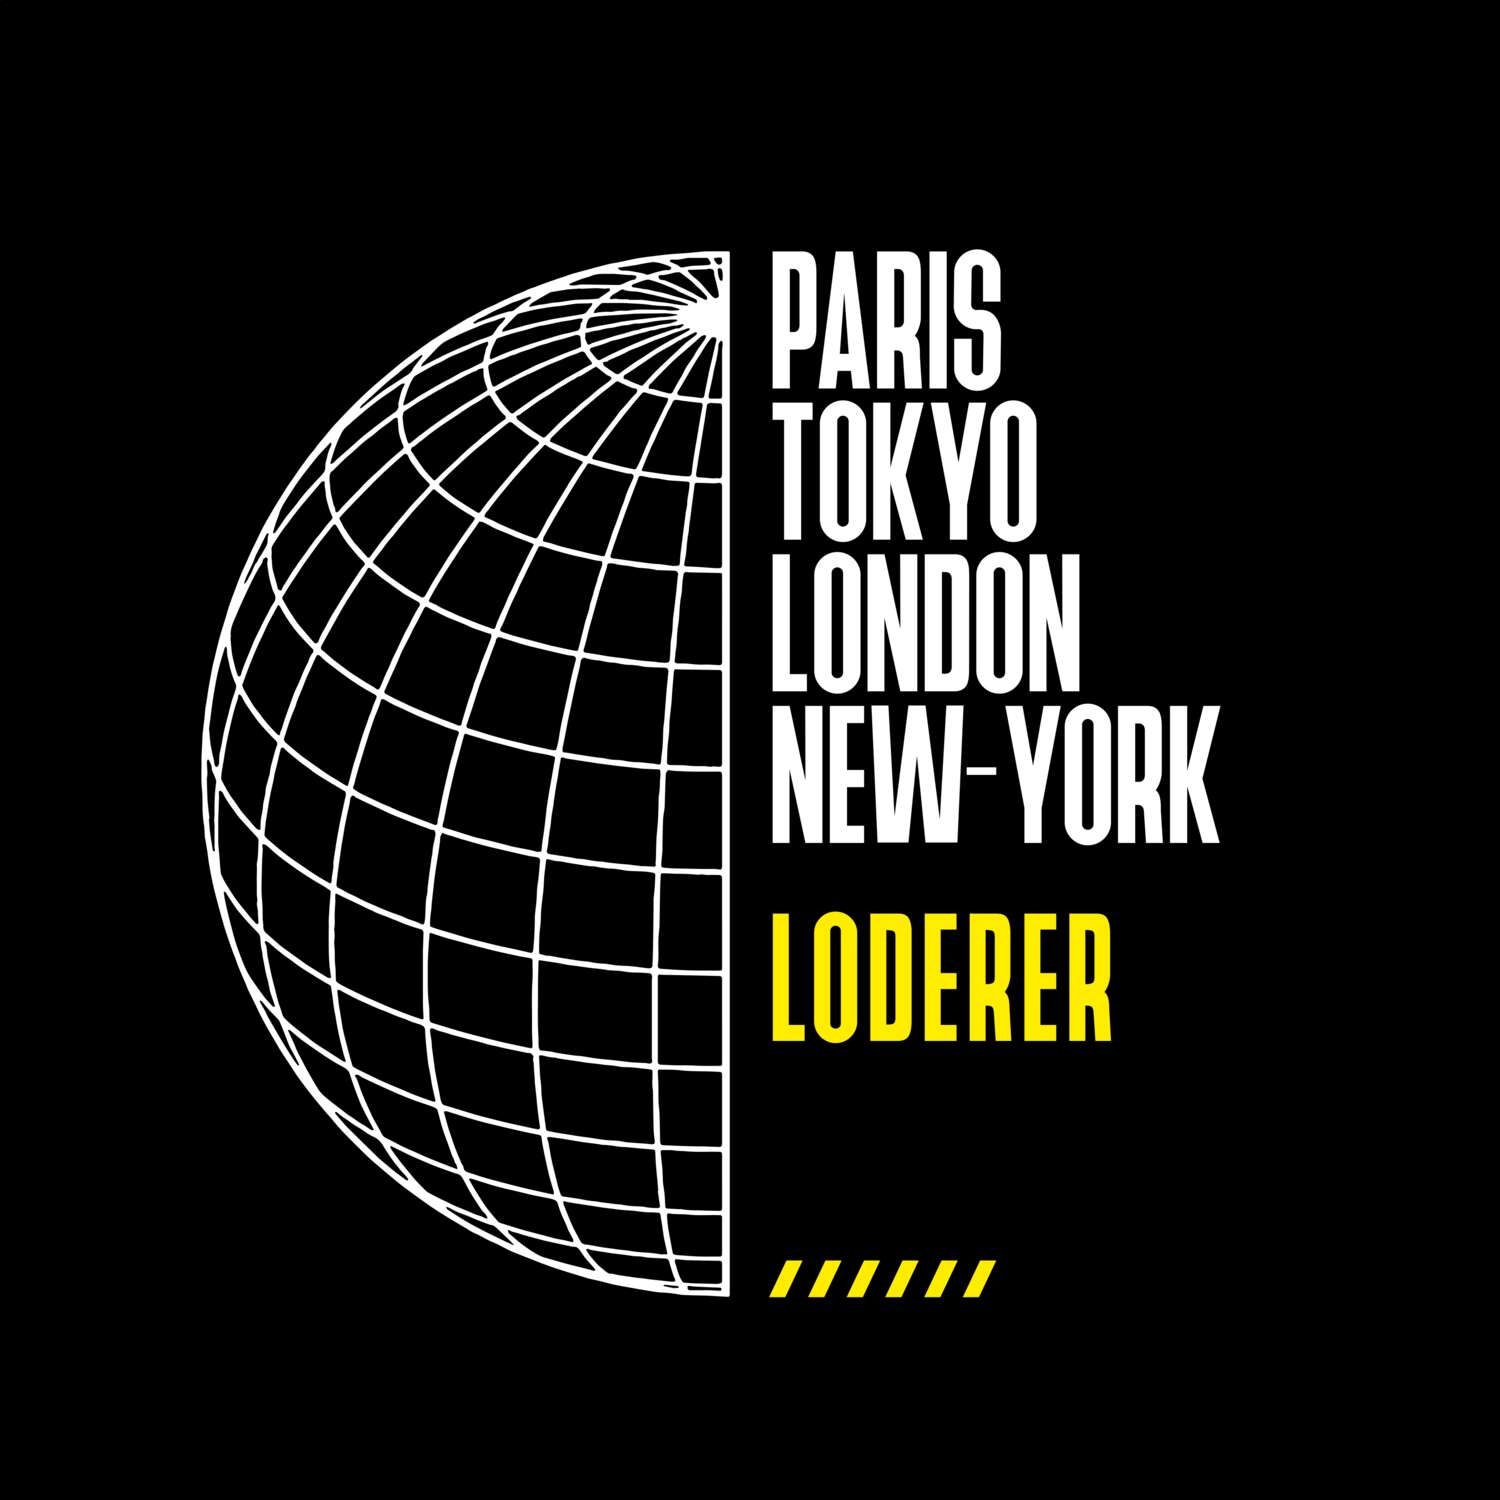 Loderer T-Shirt »Paris Tokyo London«